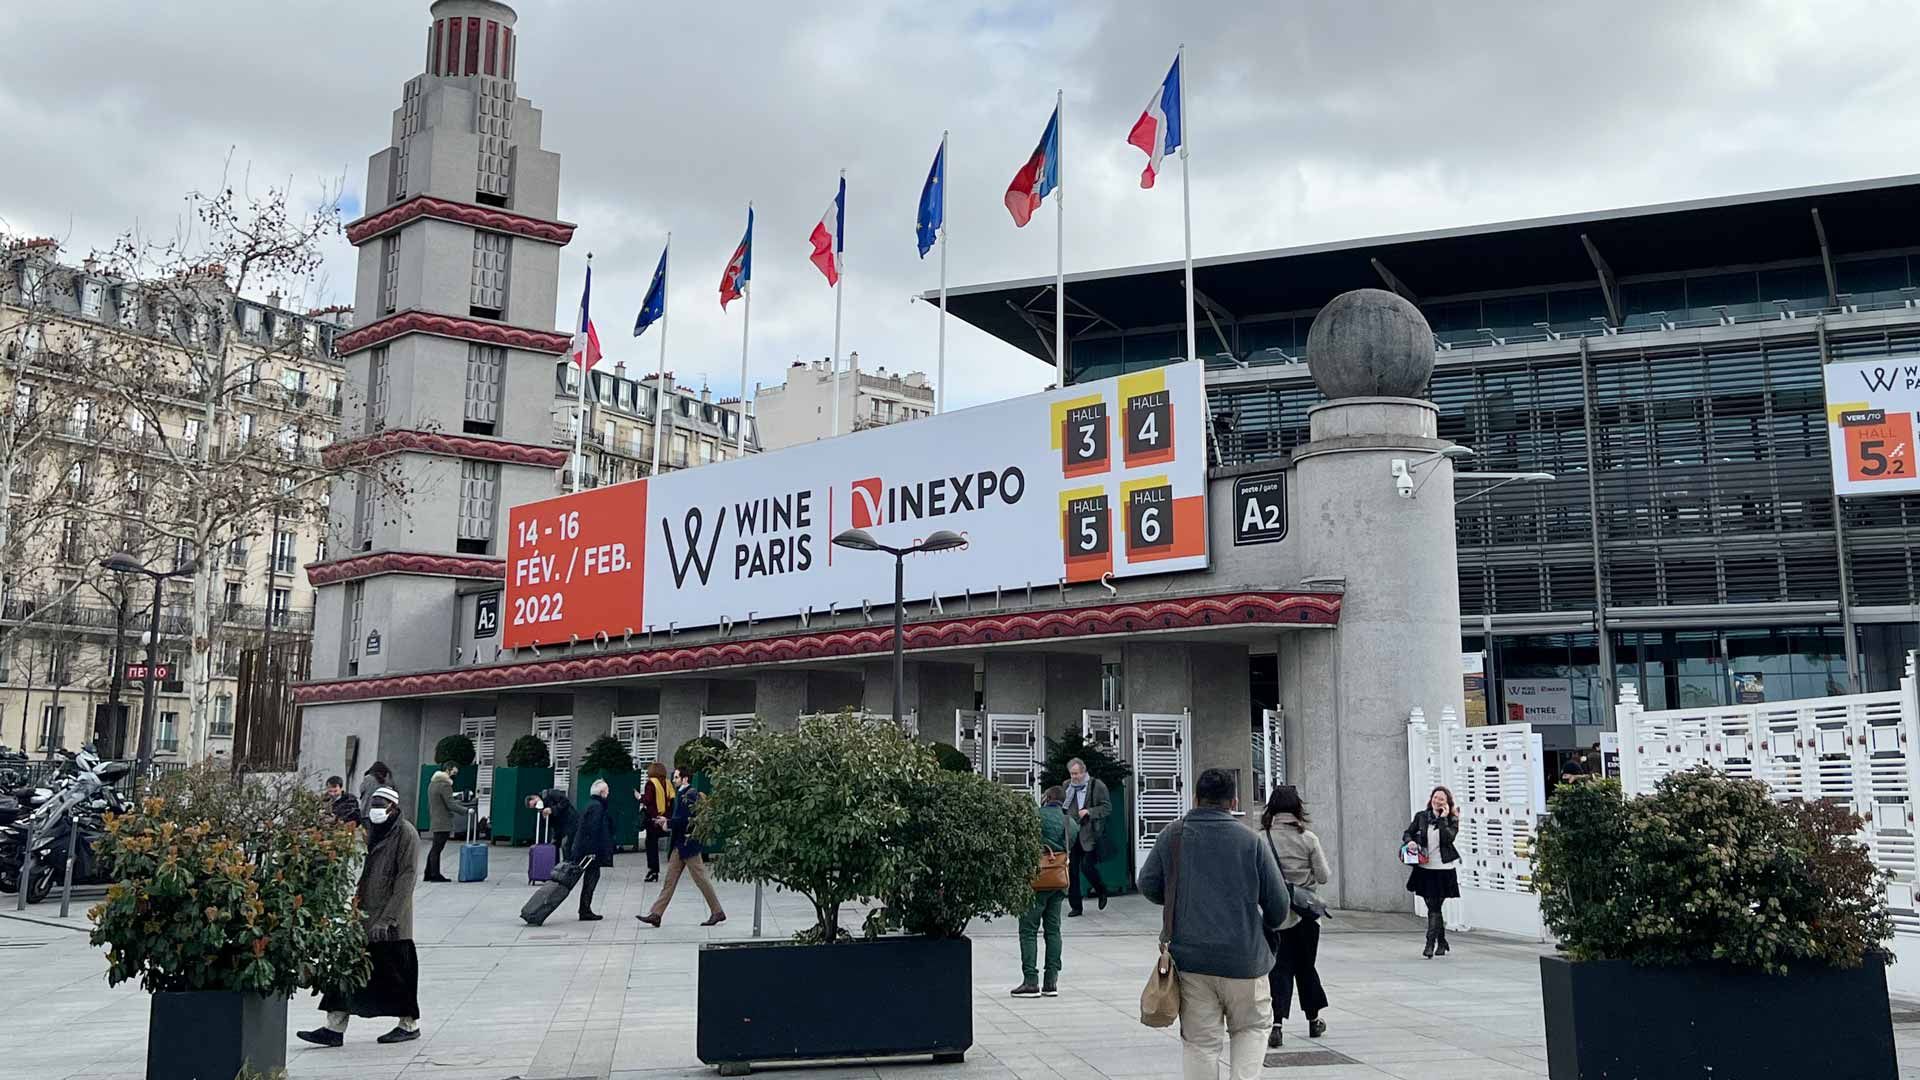 Wine Paris & Vinexpo Paris expects surge in overseas visitors